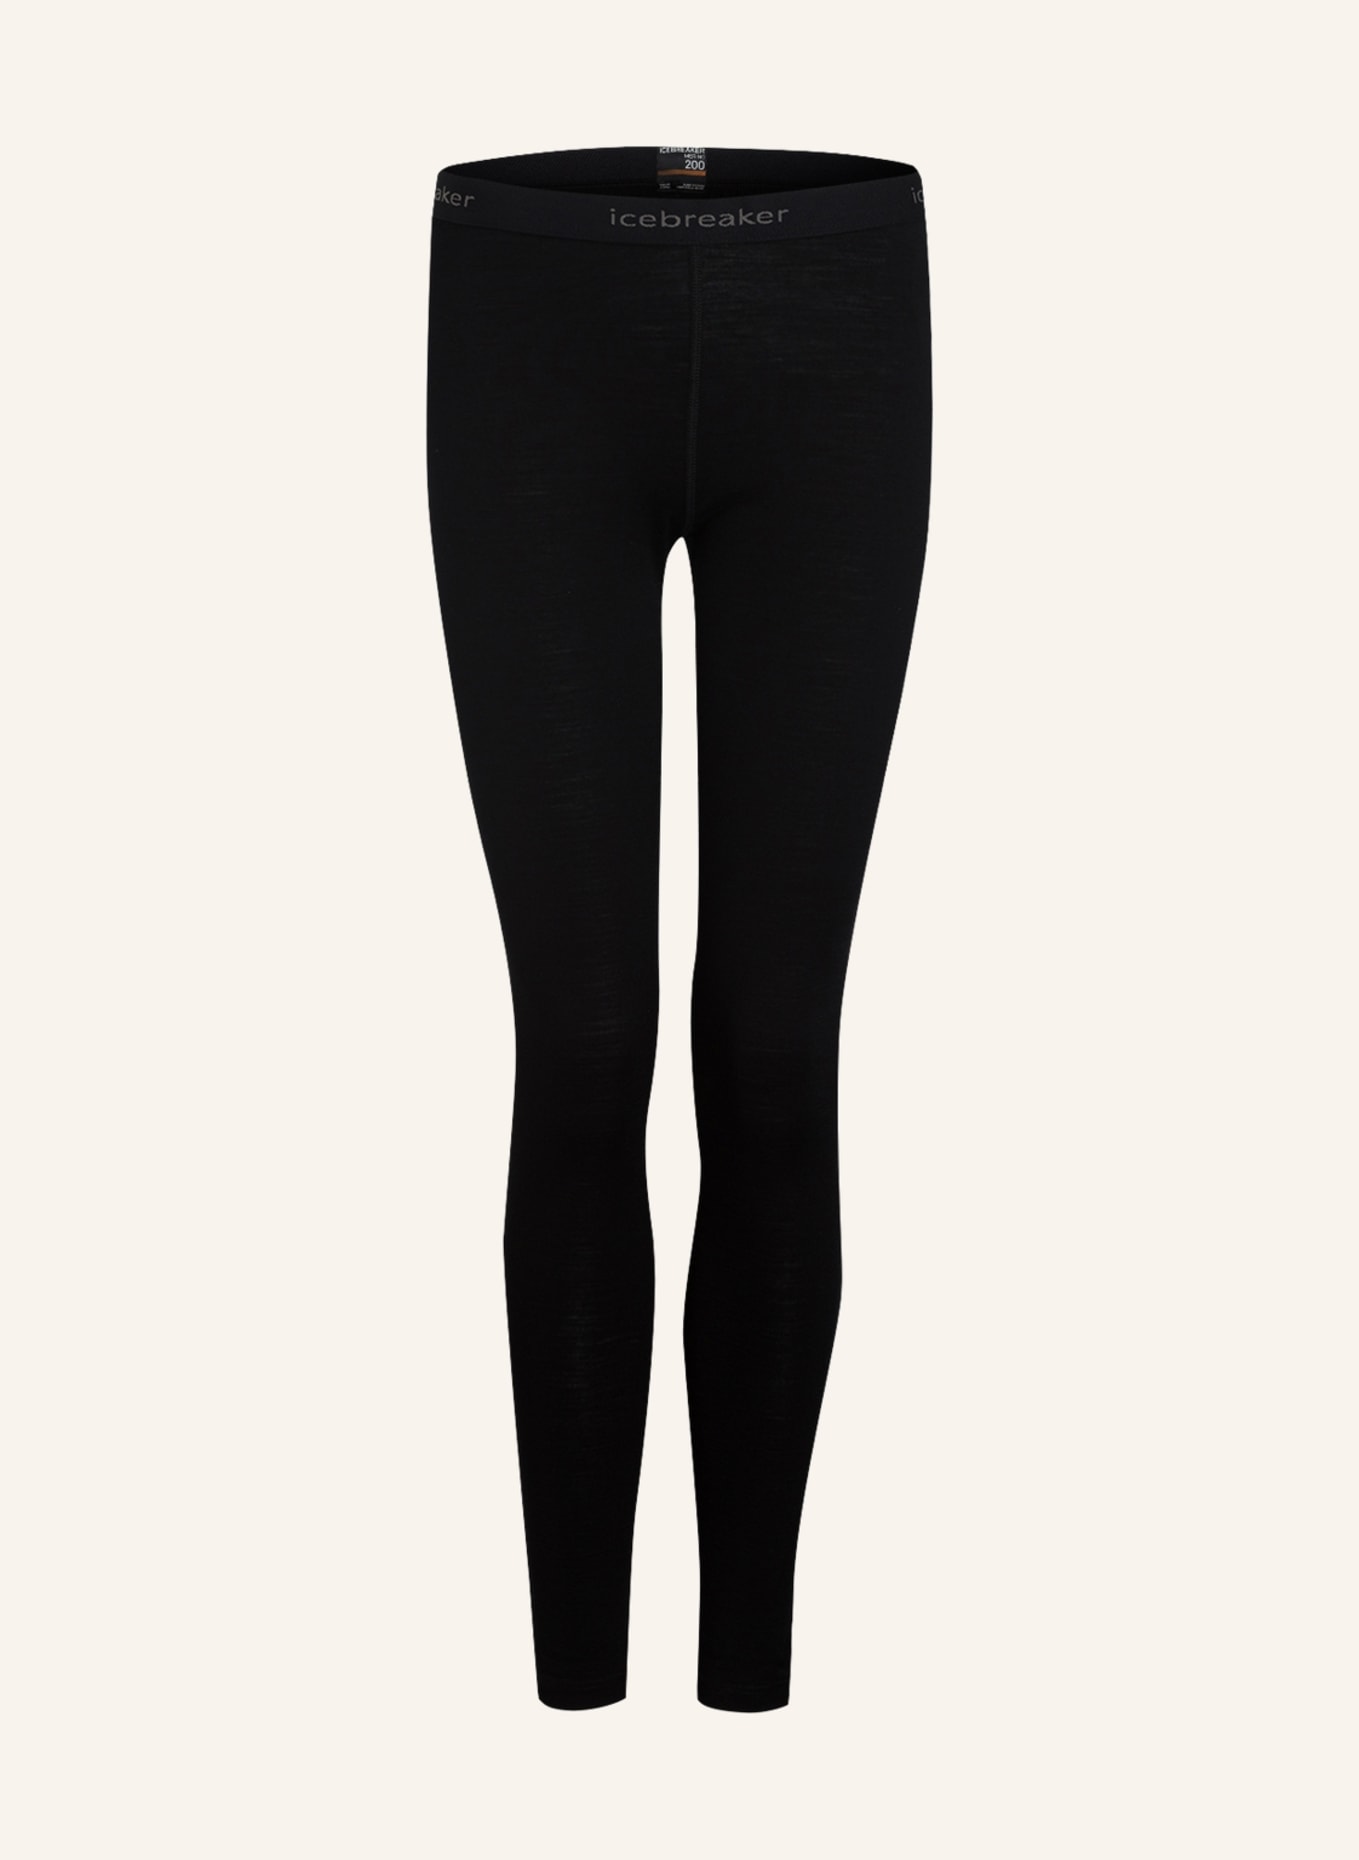 icebreaker Functional underwear trousers 200 OASIS in merino wool, Color: BLACK (Image 1)